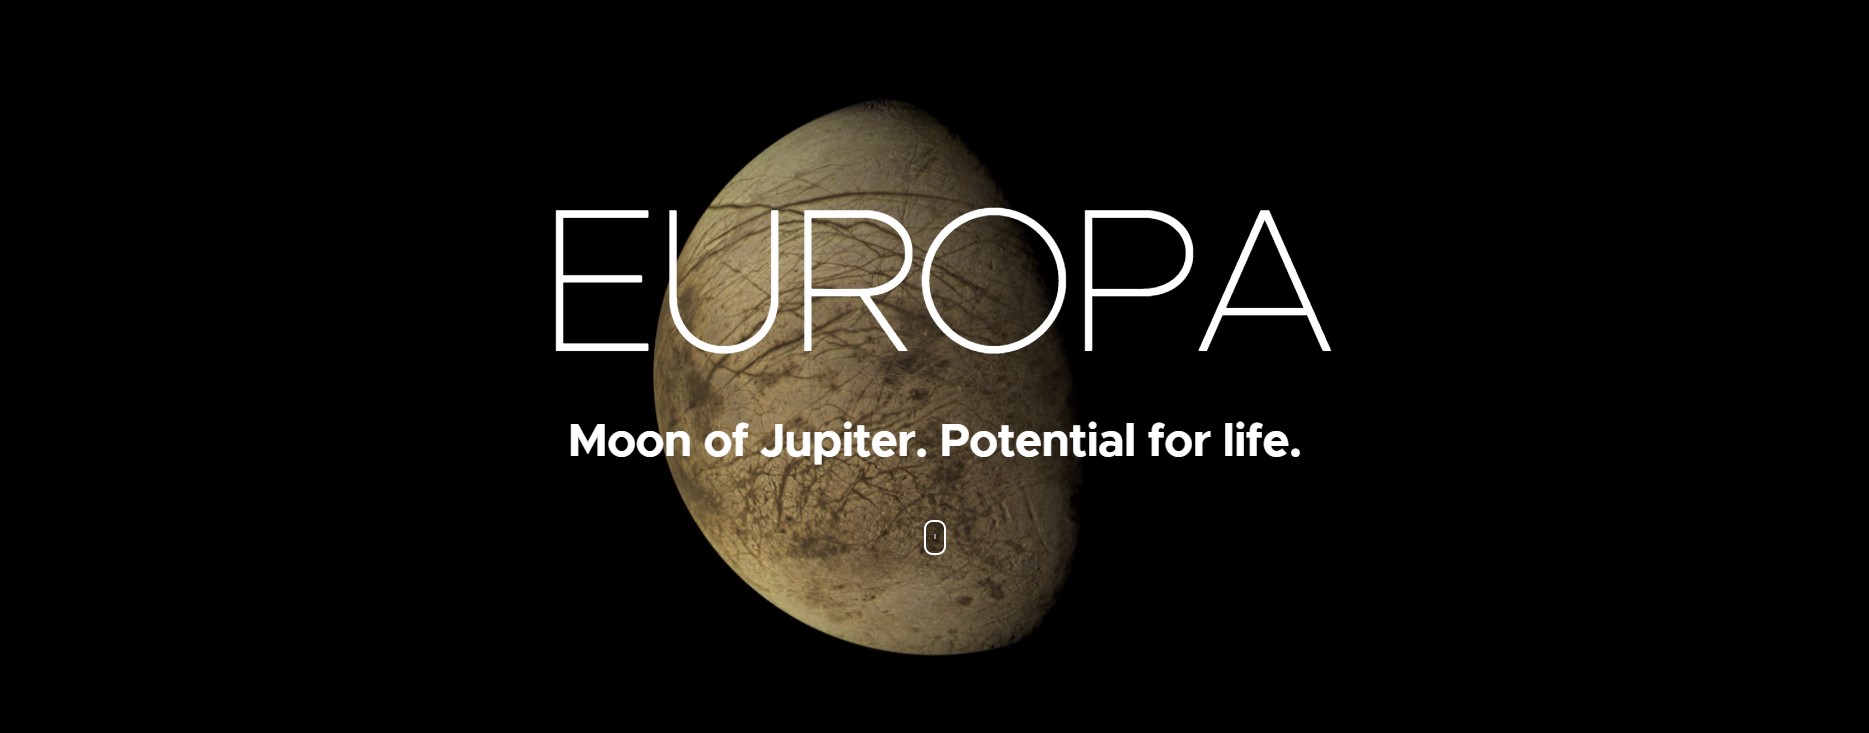 Europa, czyli księżyc Jowisza (źródło: NASA)